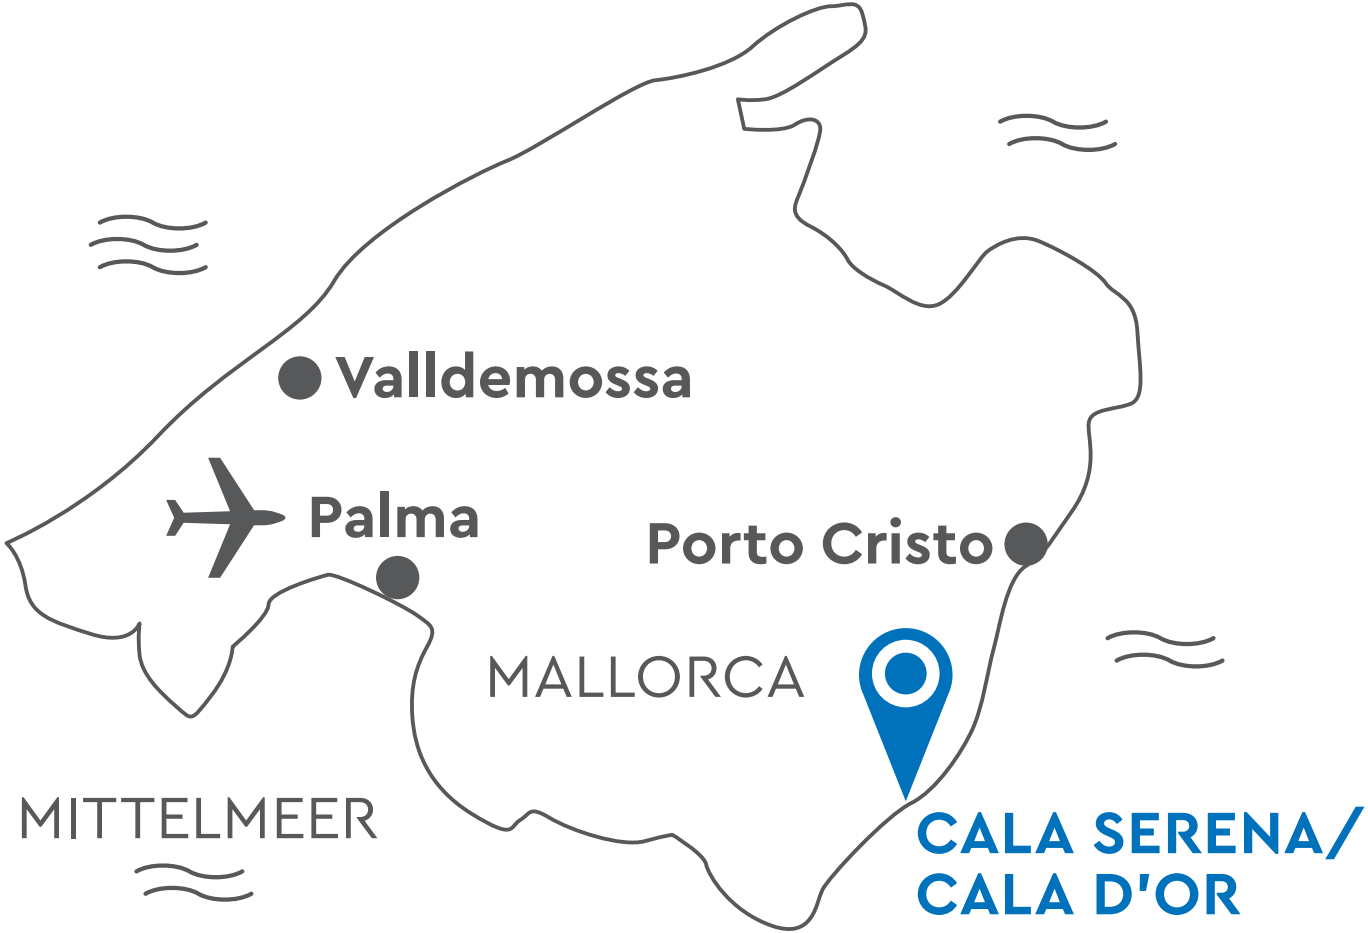 robinson-cala-serena-map.png 